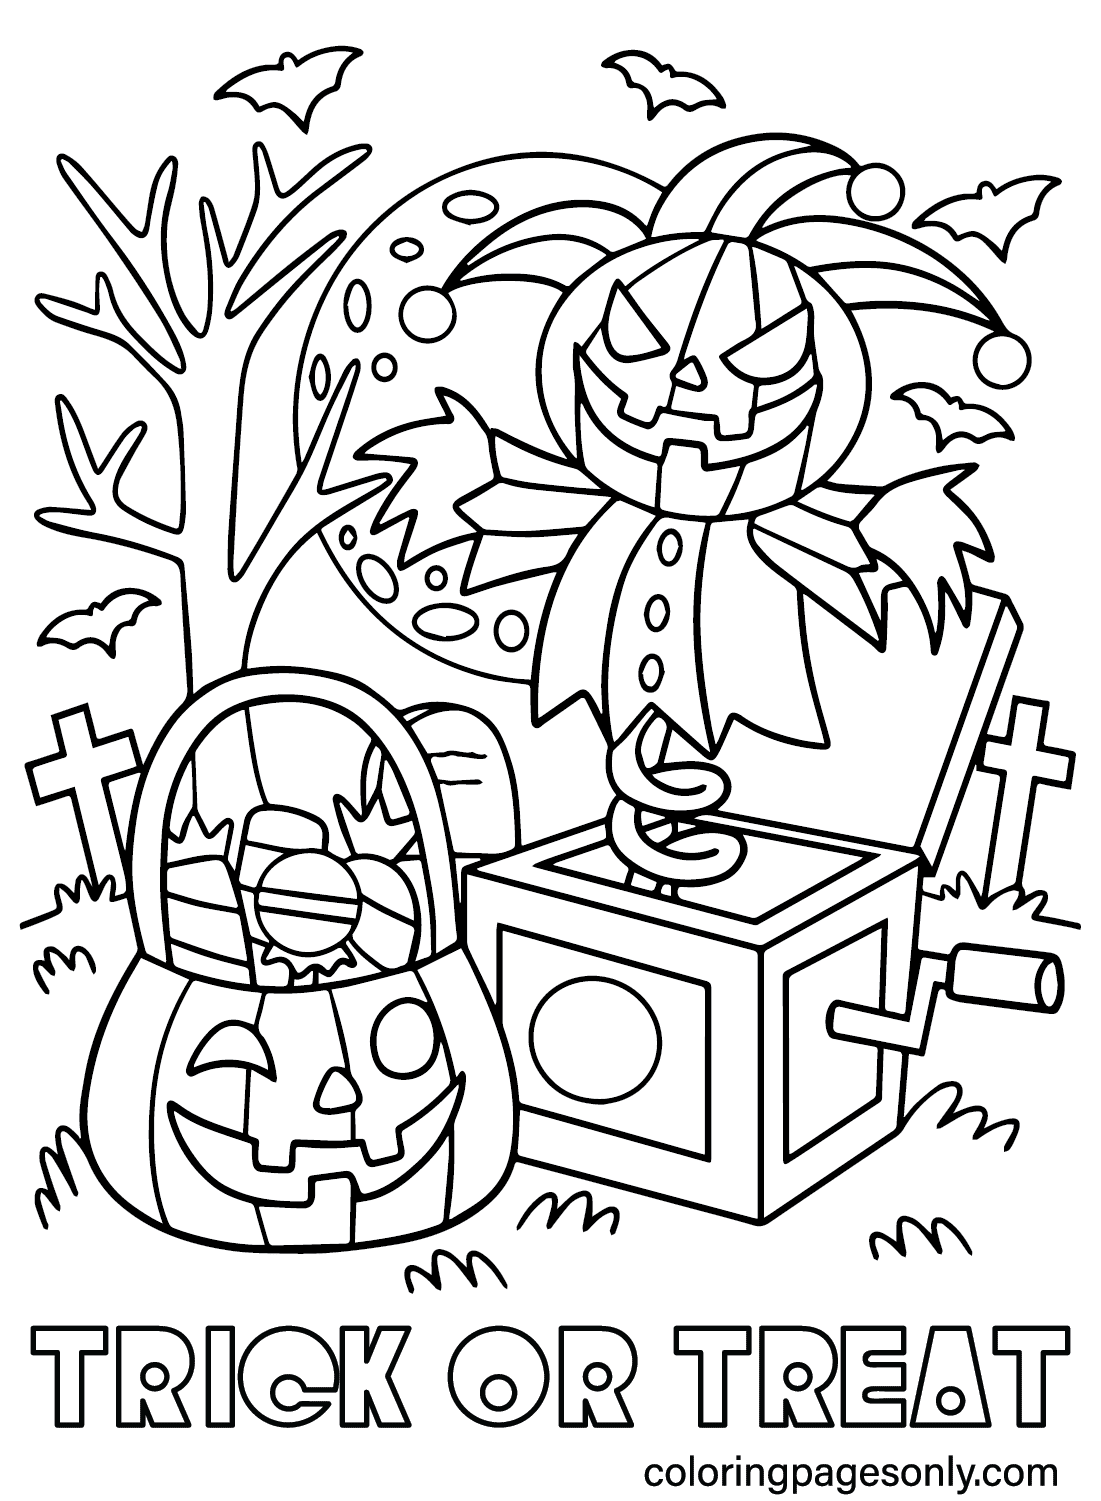 Páginas para colorear de truco o trato para imprimir desde Spooktacular Halloween